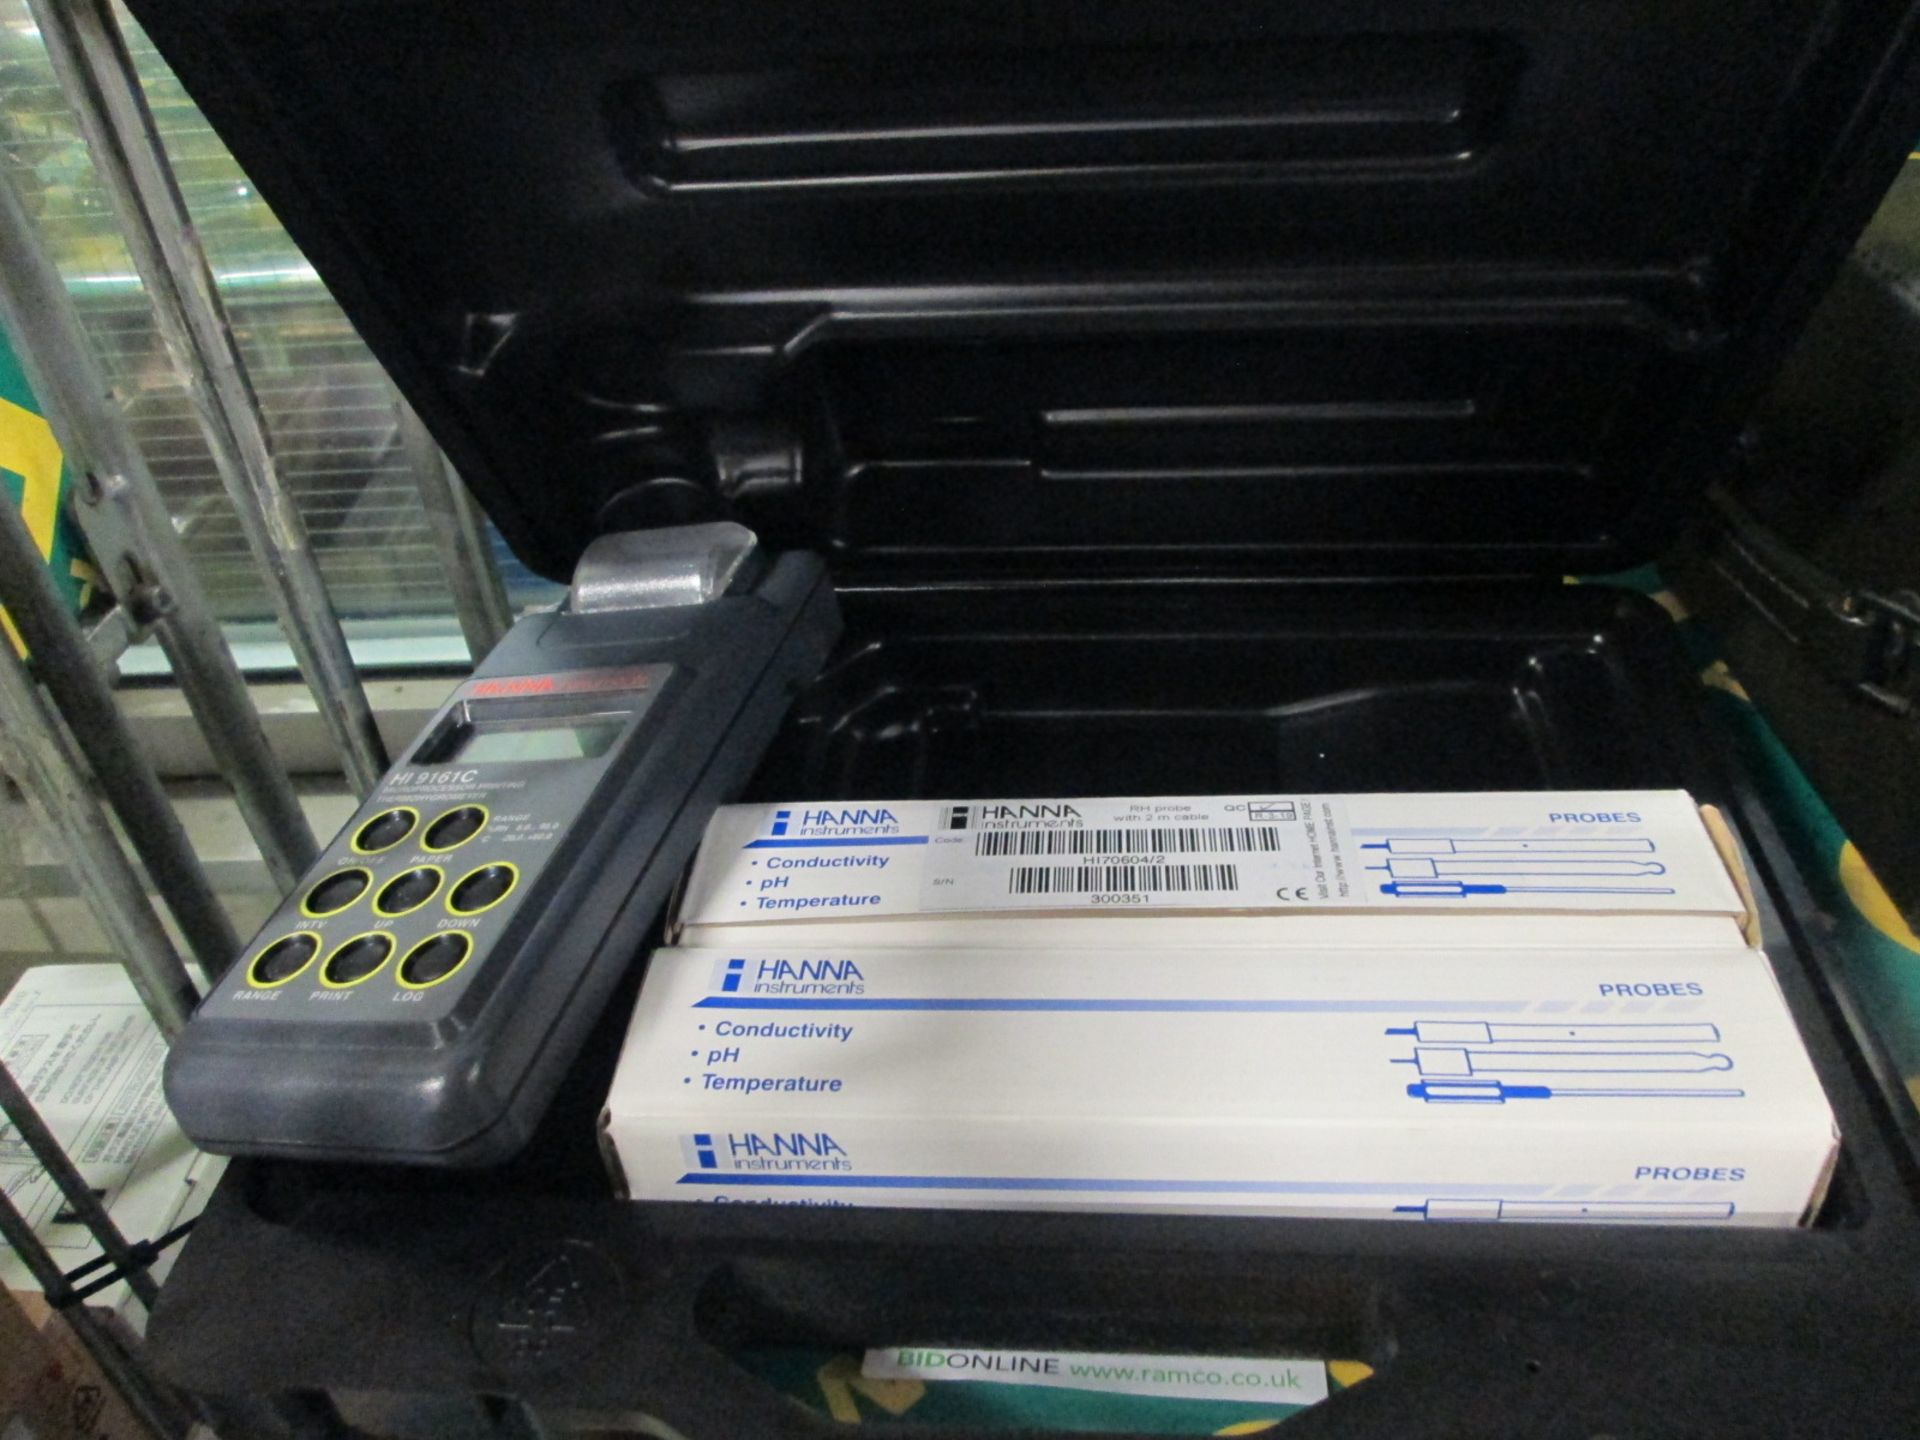 Hanna HI161C Printer Unit in carry case